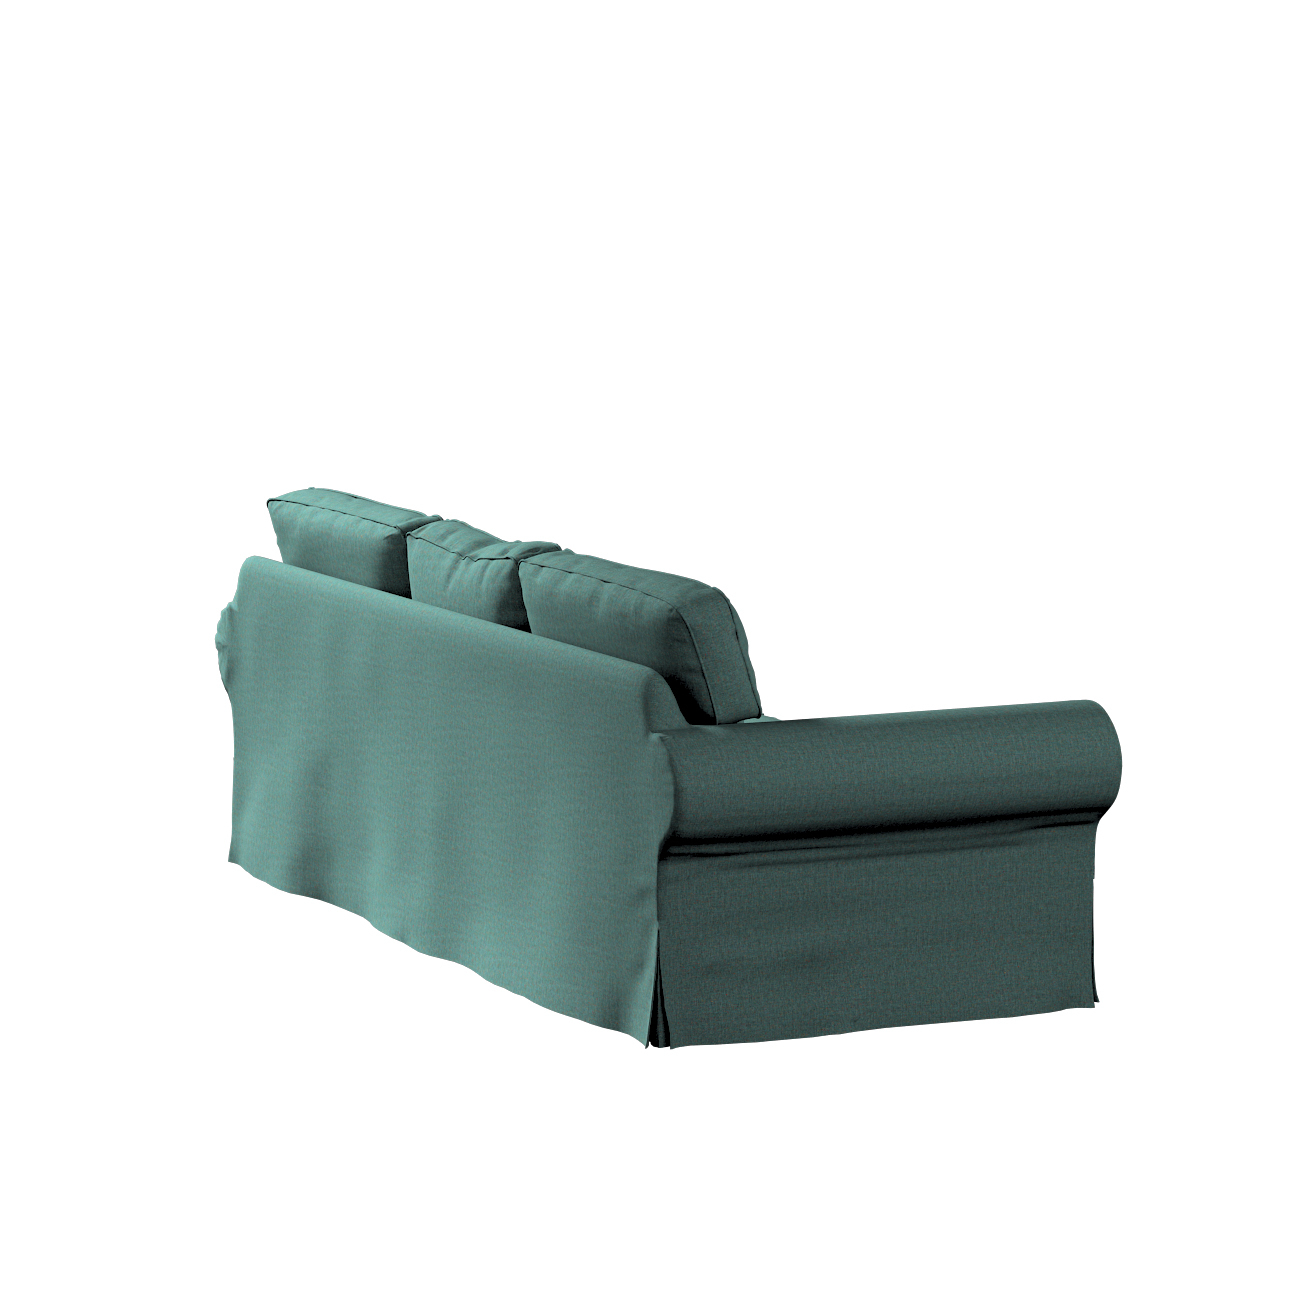 Bezug für Ektorp 3-Sitzer Schlafsofa, neues Modell (2013), türkis, 40cm x 3 günstig online kaufen